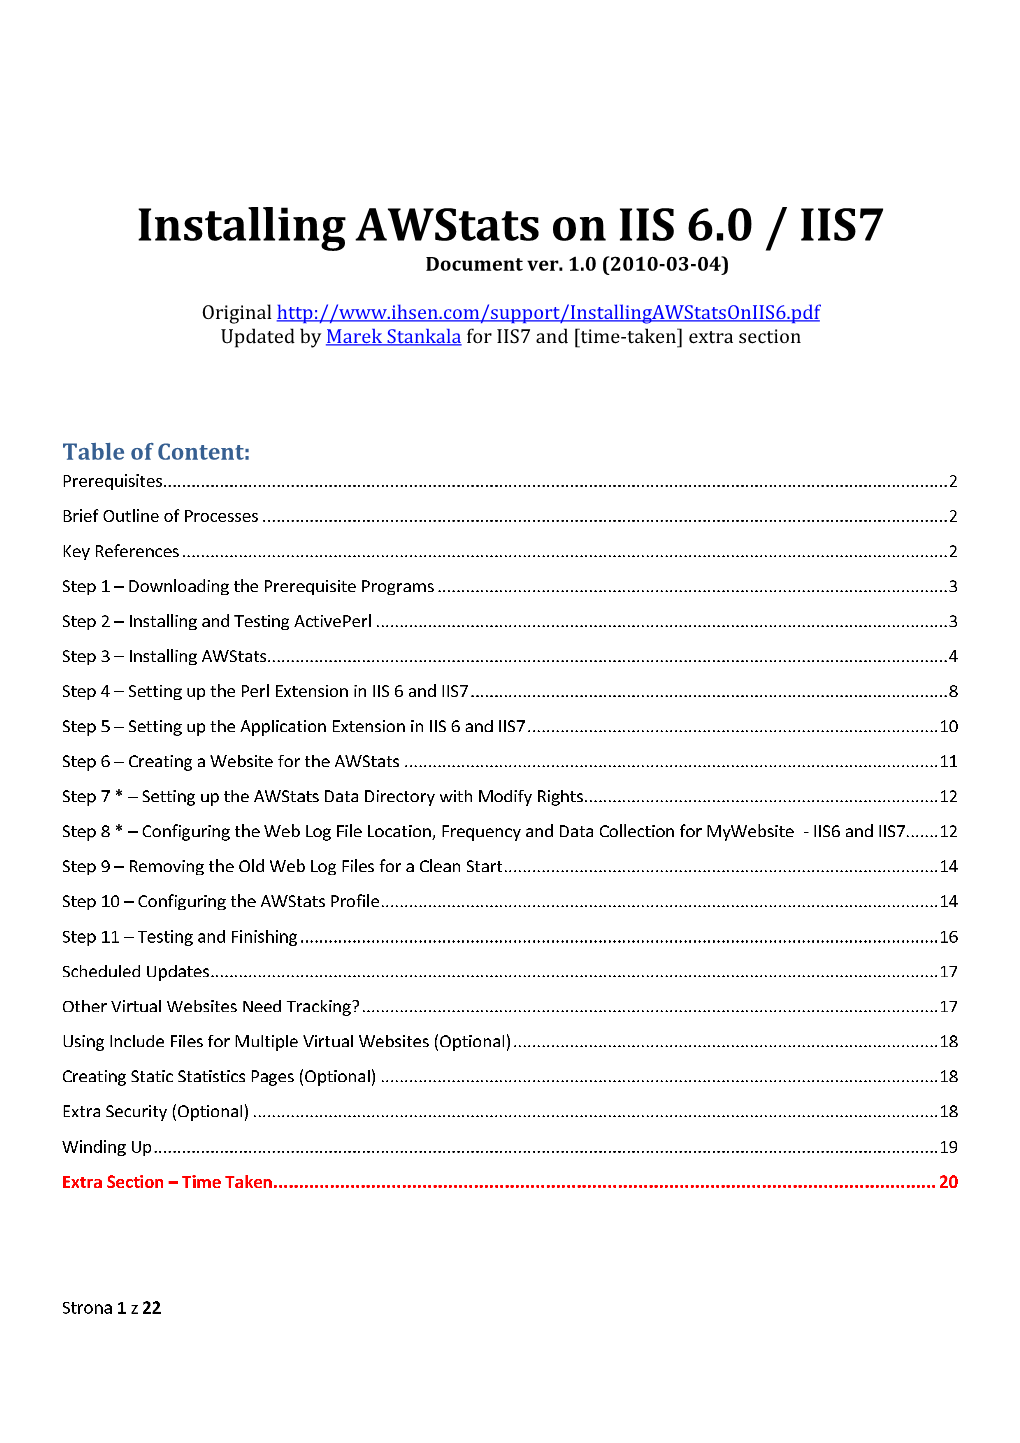 Installing Awstats on IIS 6.0 / IIS7 Document Ver